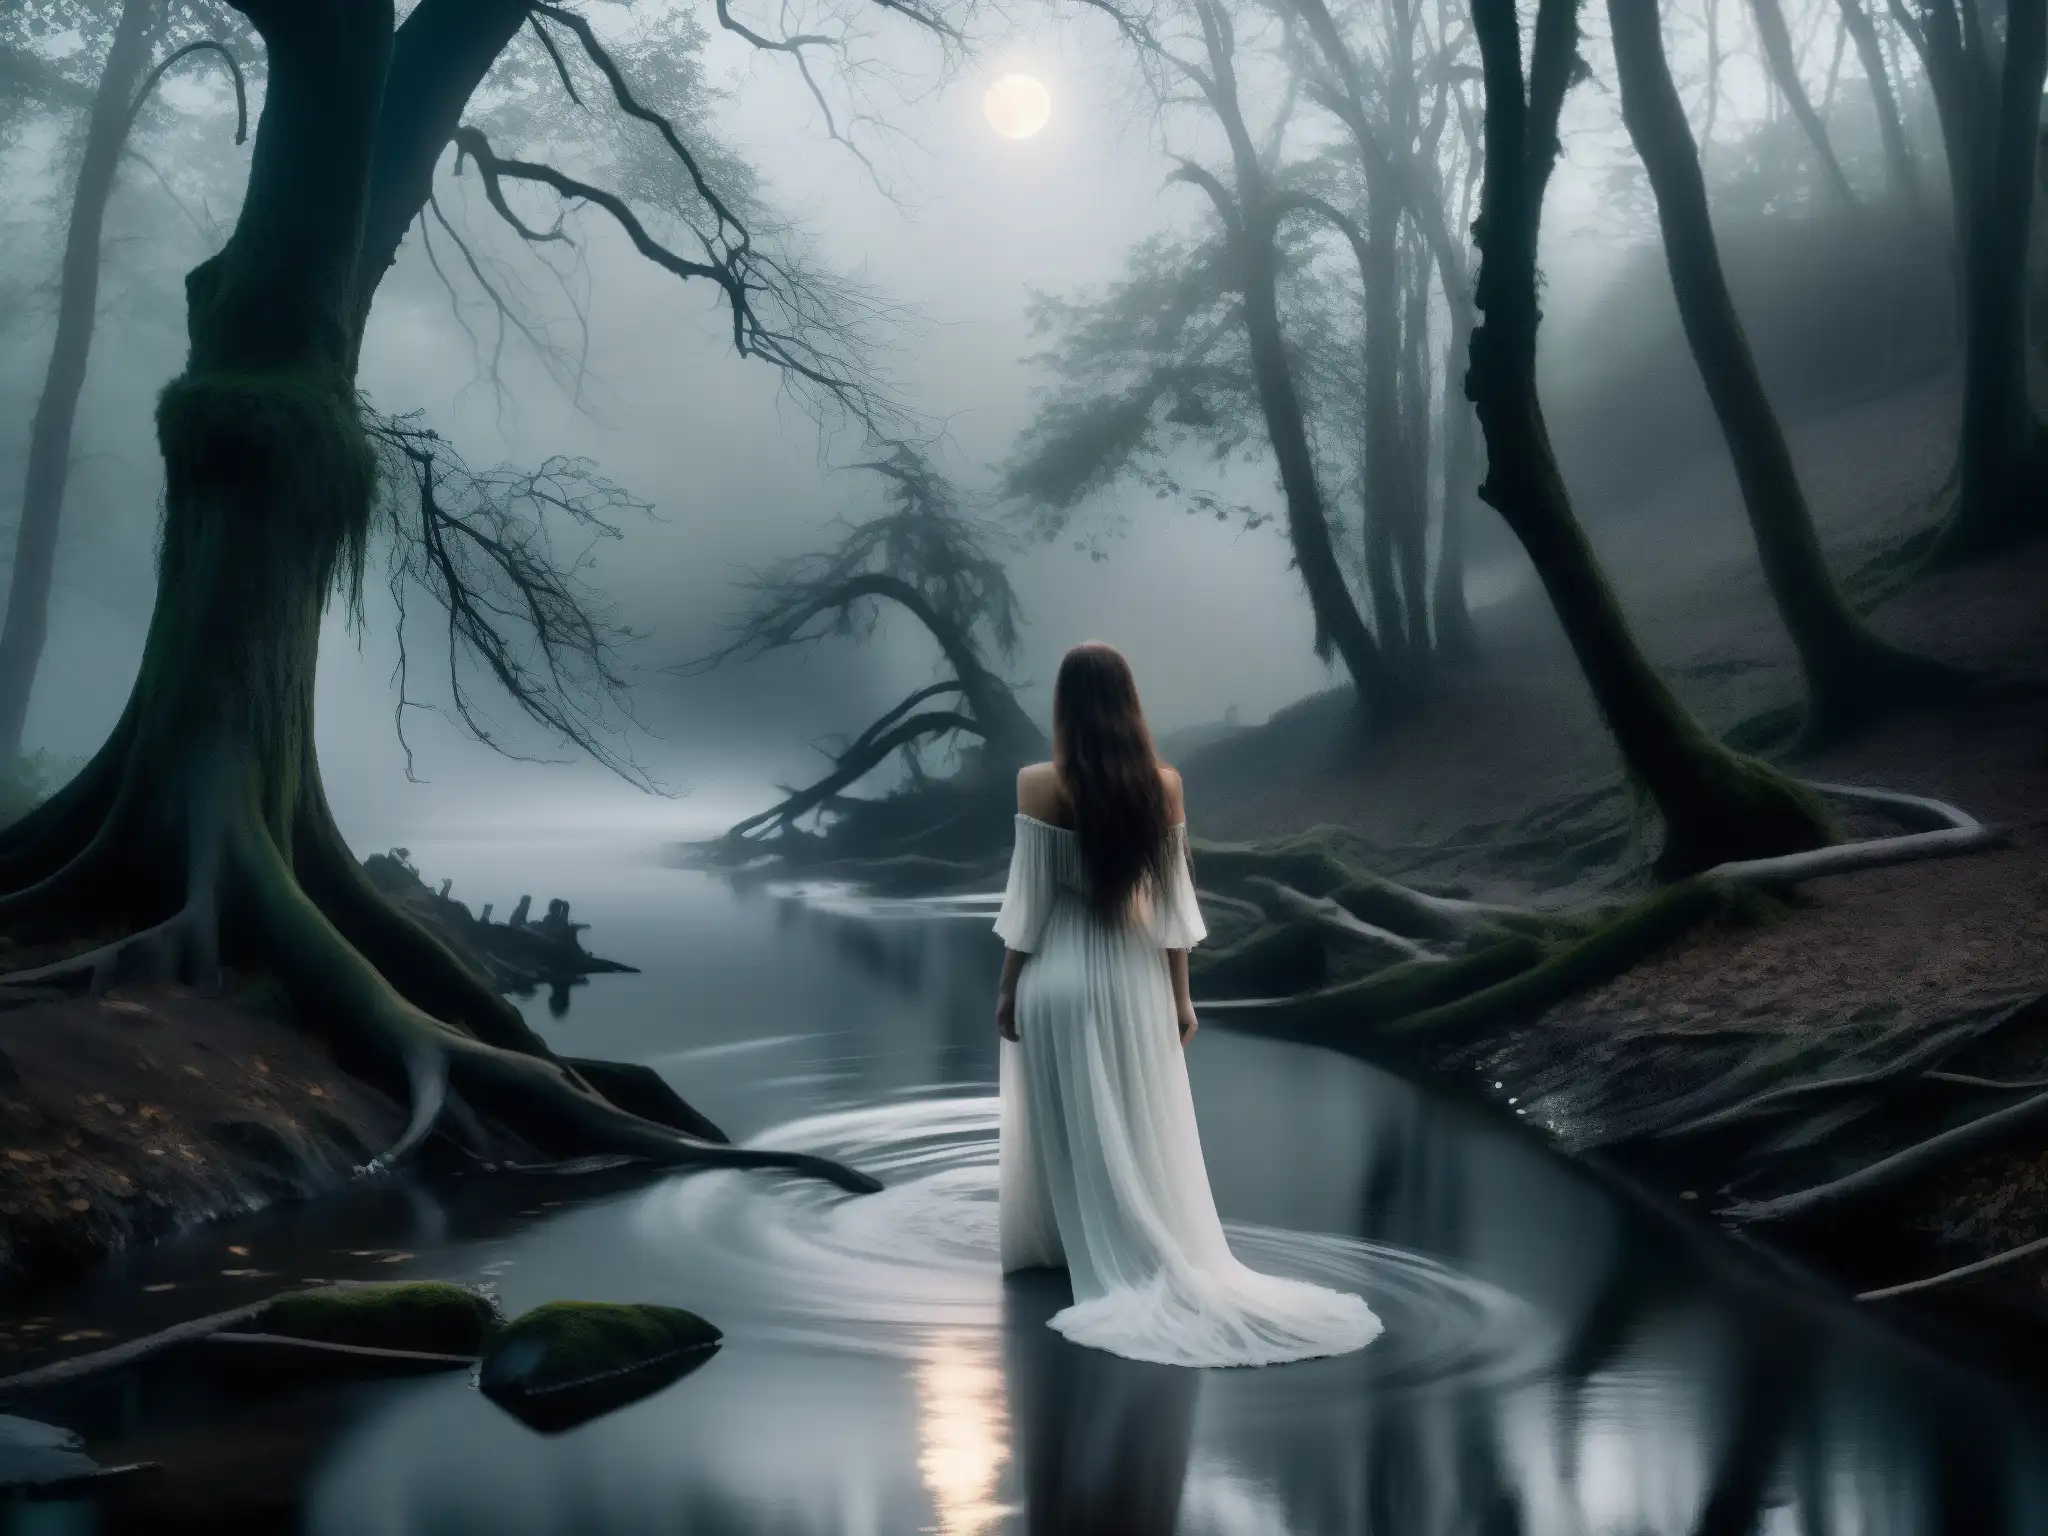 Escena de terror con La Llorona, figura fantasmal en un río bajo la luz de la luna en un bosque oscuro